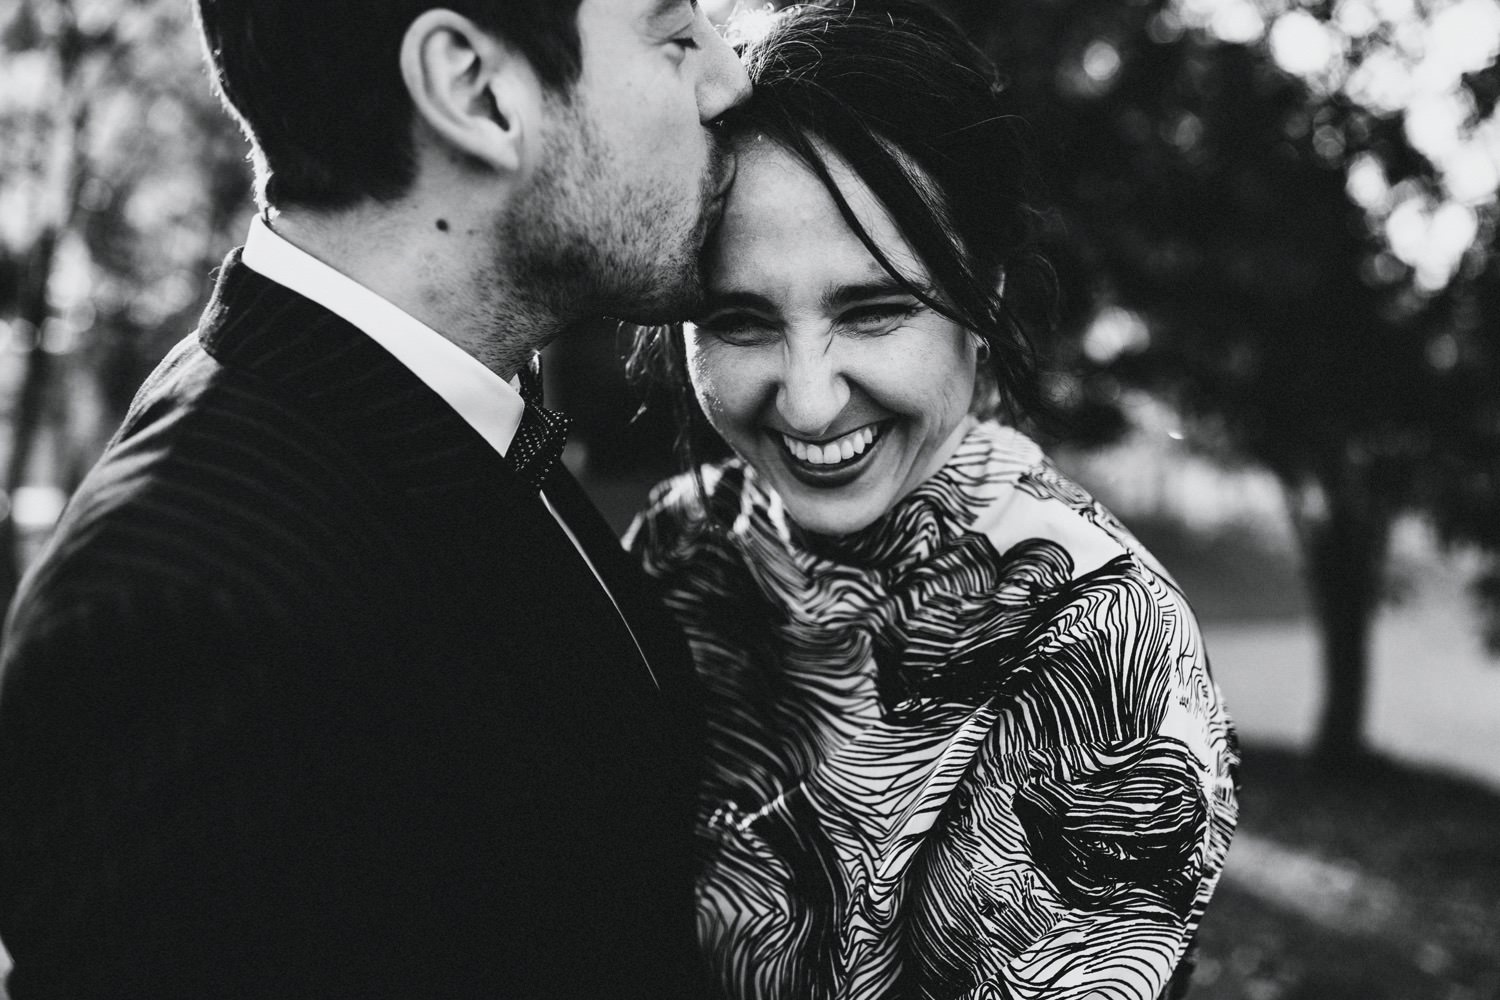 Der Bräutigam gibt seiner Braut einen zärtlichen Kuss auf die Schläfe, während die Braut herzhaft lacht und sich liebevoll an ihn kuschelt. In diesem intimen Moment der Zuneigung und Verbundenheit strahlen sie vor Glück und Vorfreude auf ihre gemeinsame Zukunft.